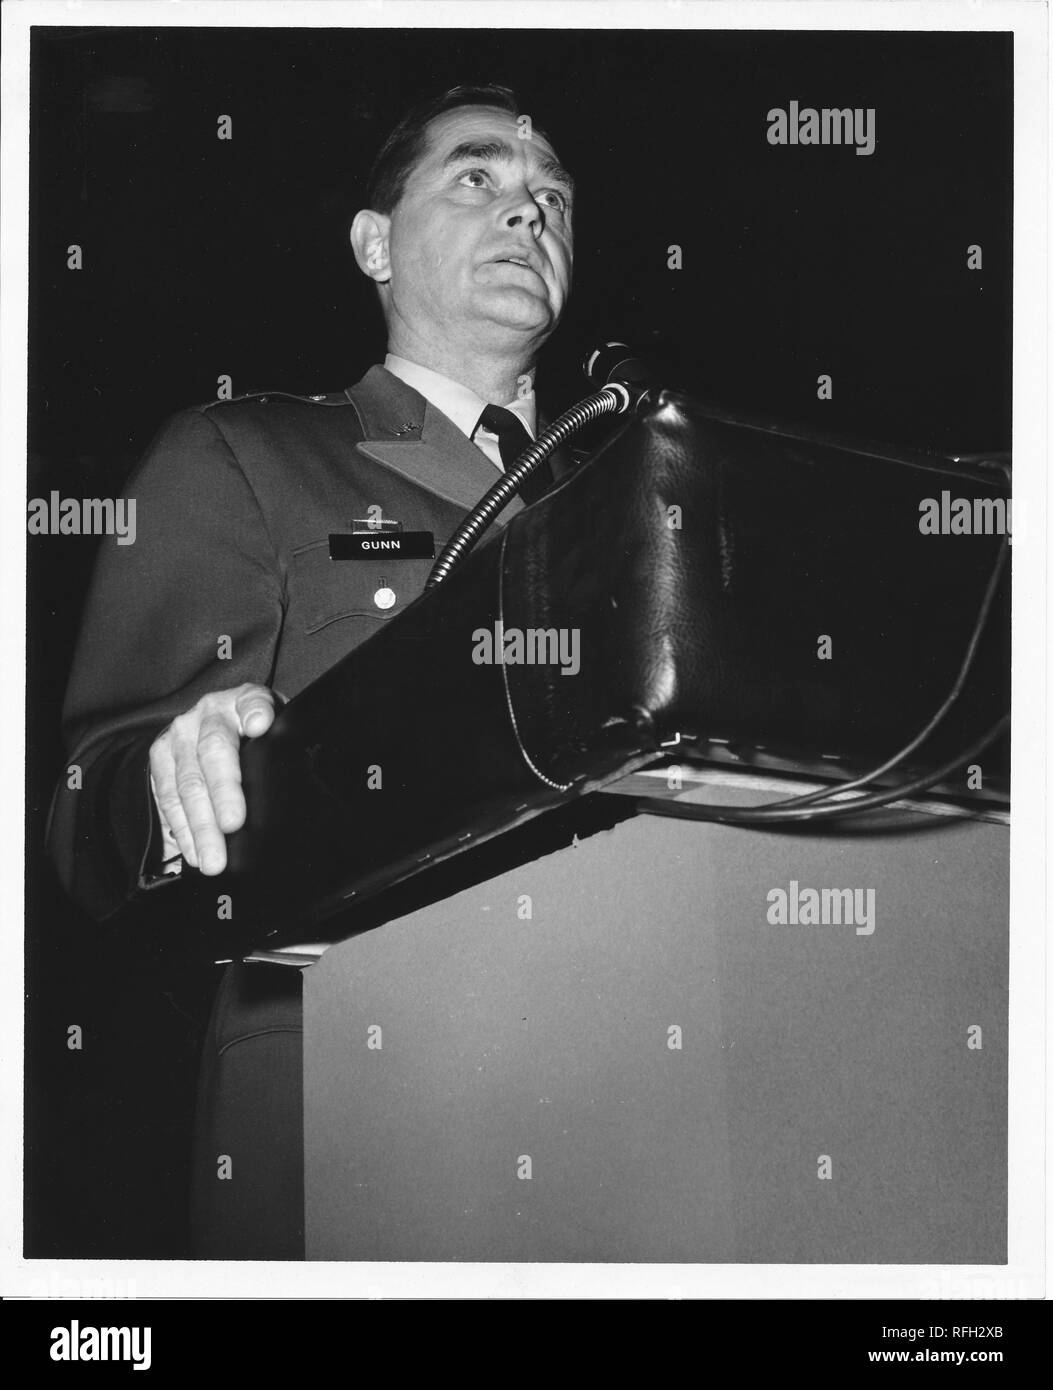 Schwarz-weiß Foto, von einem niedrigen Winkel, Brigadegeneral Frank L Gunn, das Tragen einer Uniform mit dem Namen Tag "Gunn", sprechen von einem Podium, während des Vietnam Krieges, 1967 fotografiert. () Stockfoto